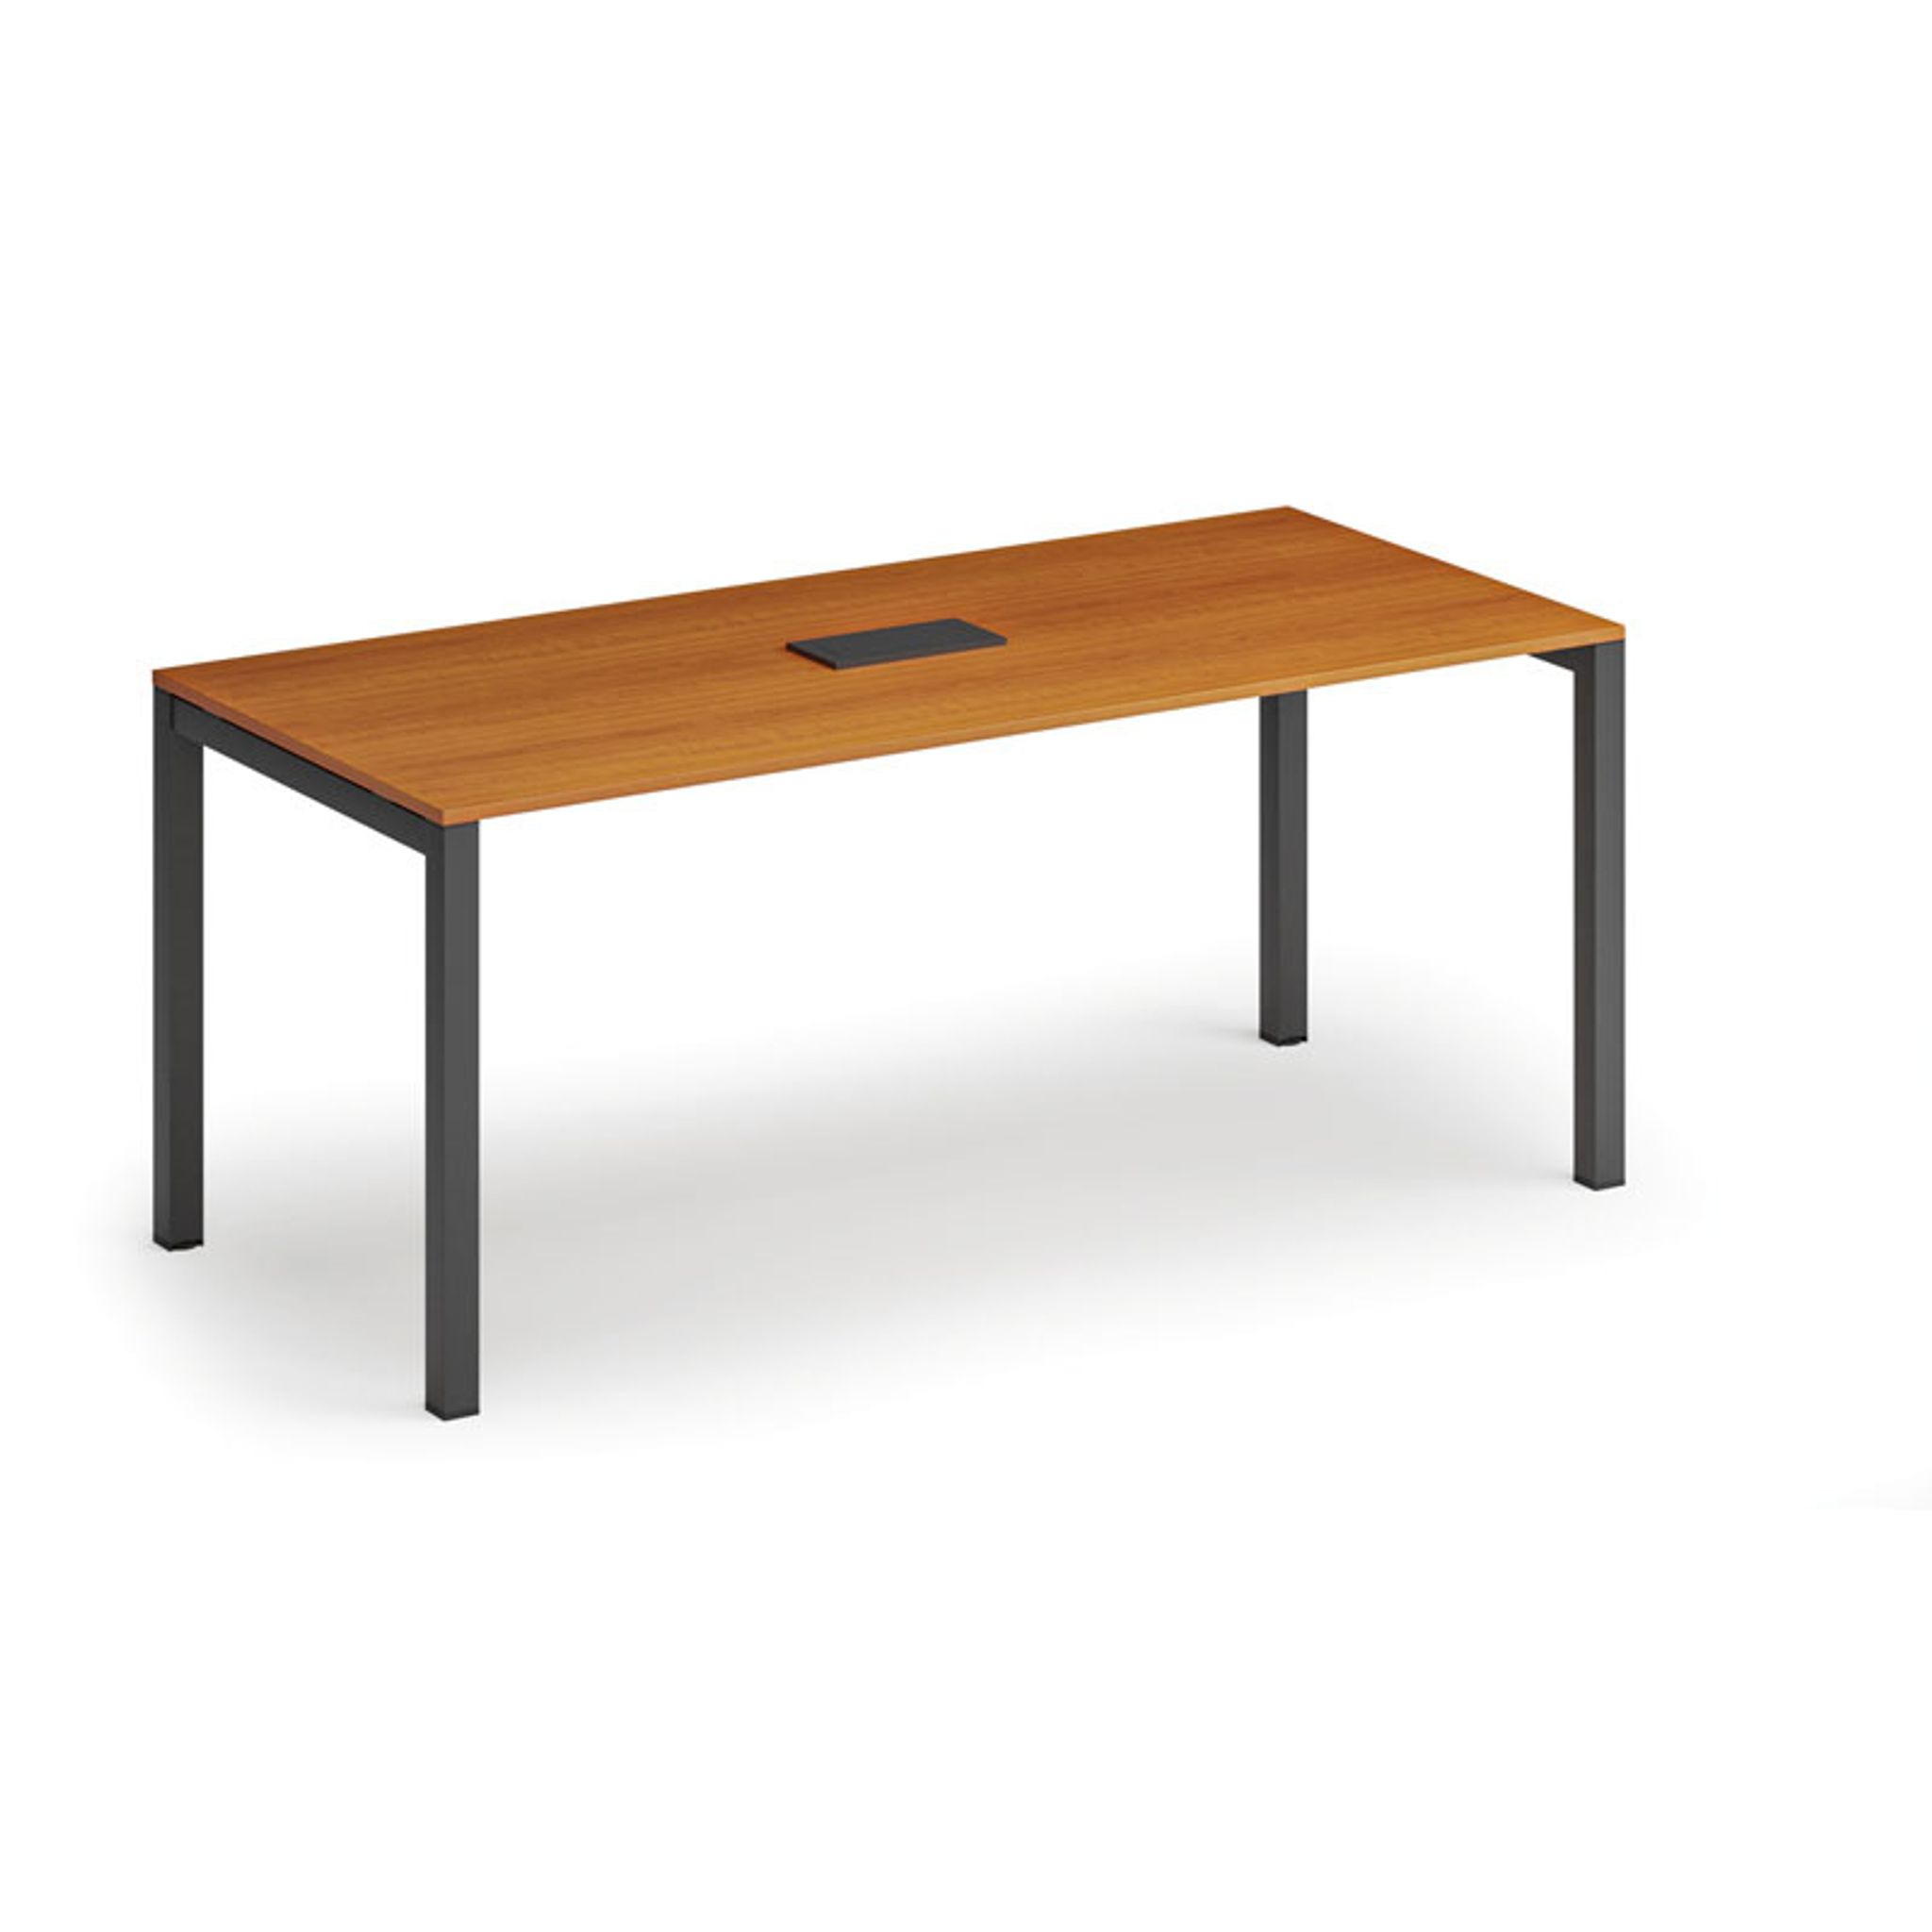 Stôl SQUARE 1800 x 800 x 750, čerešňa + stolová zásuvka TYP V, čierna